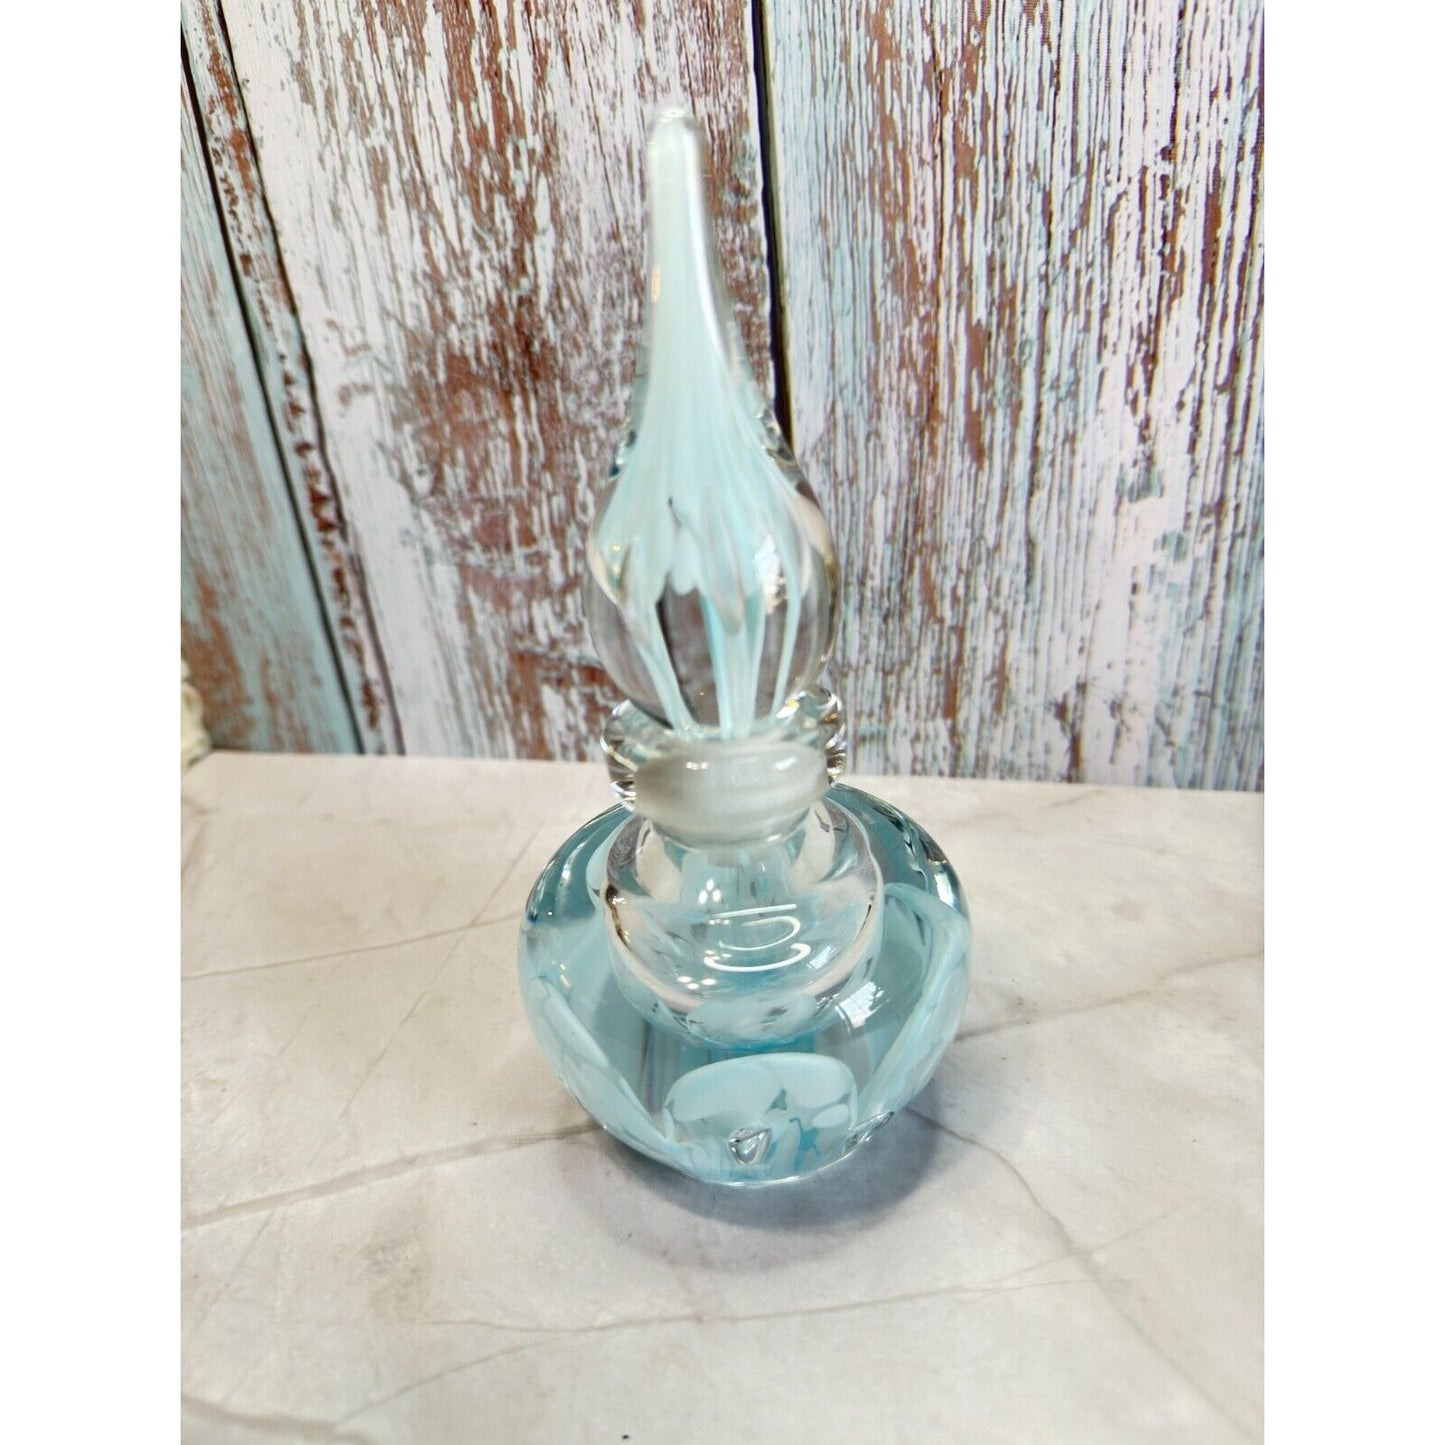 1977 Joe Zimmerman Blue Swirl Art Glass Perfume Bottle Paperweight Signed Empty